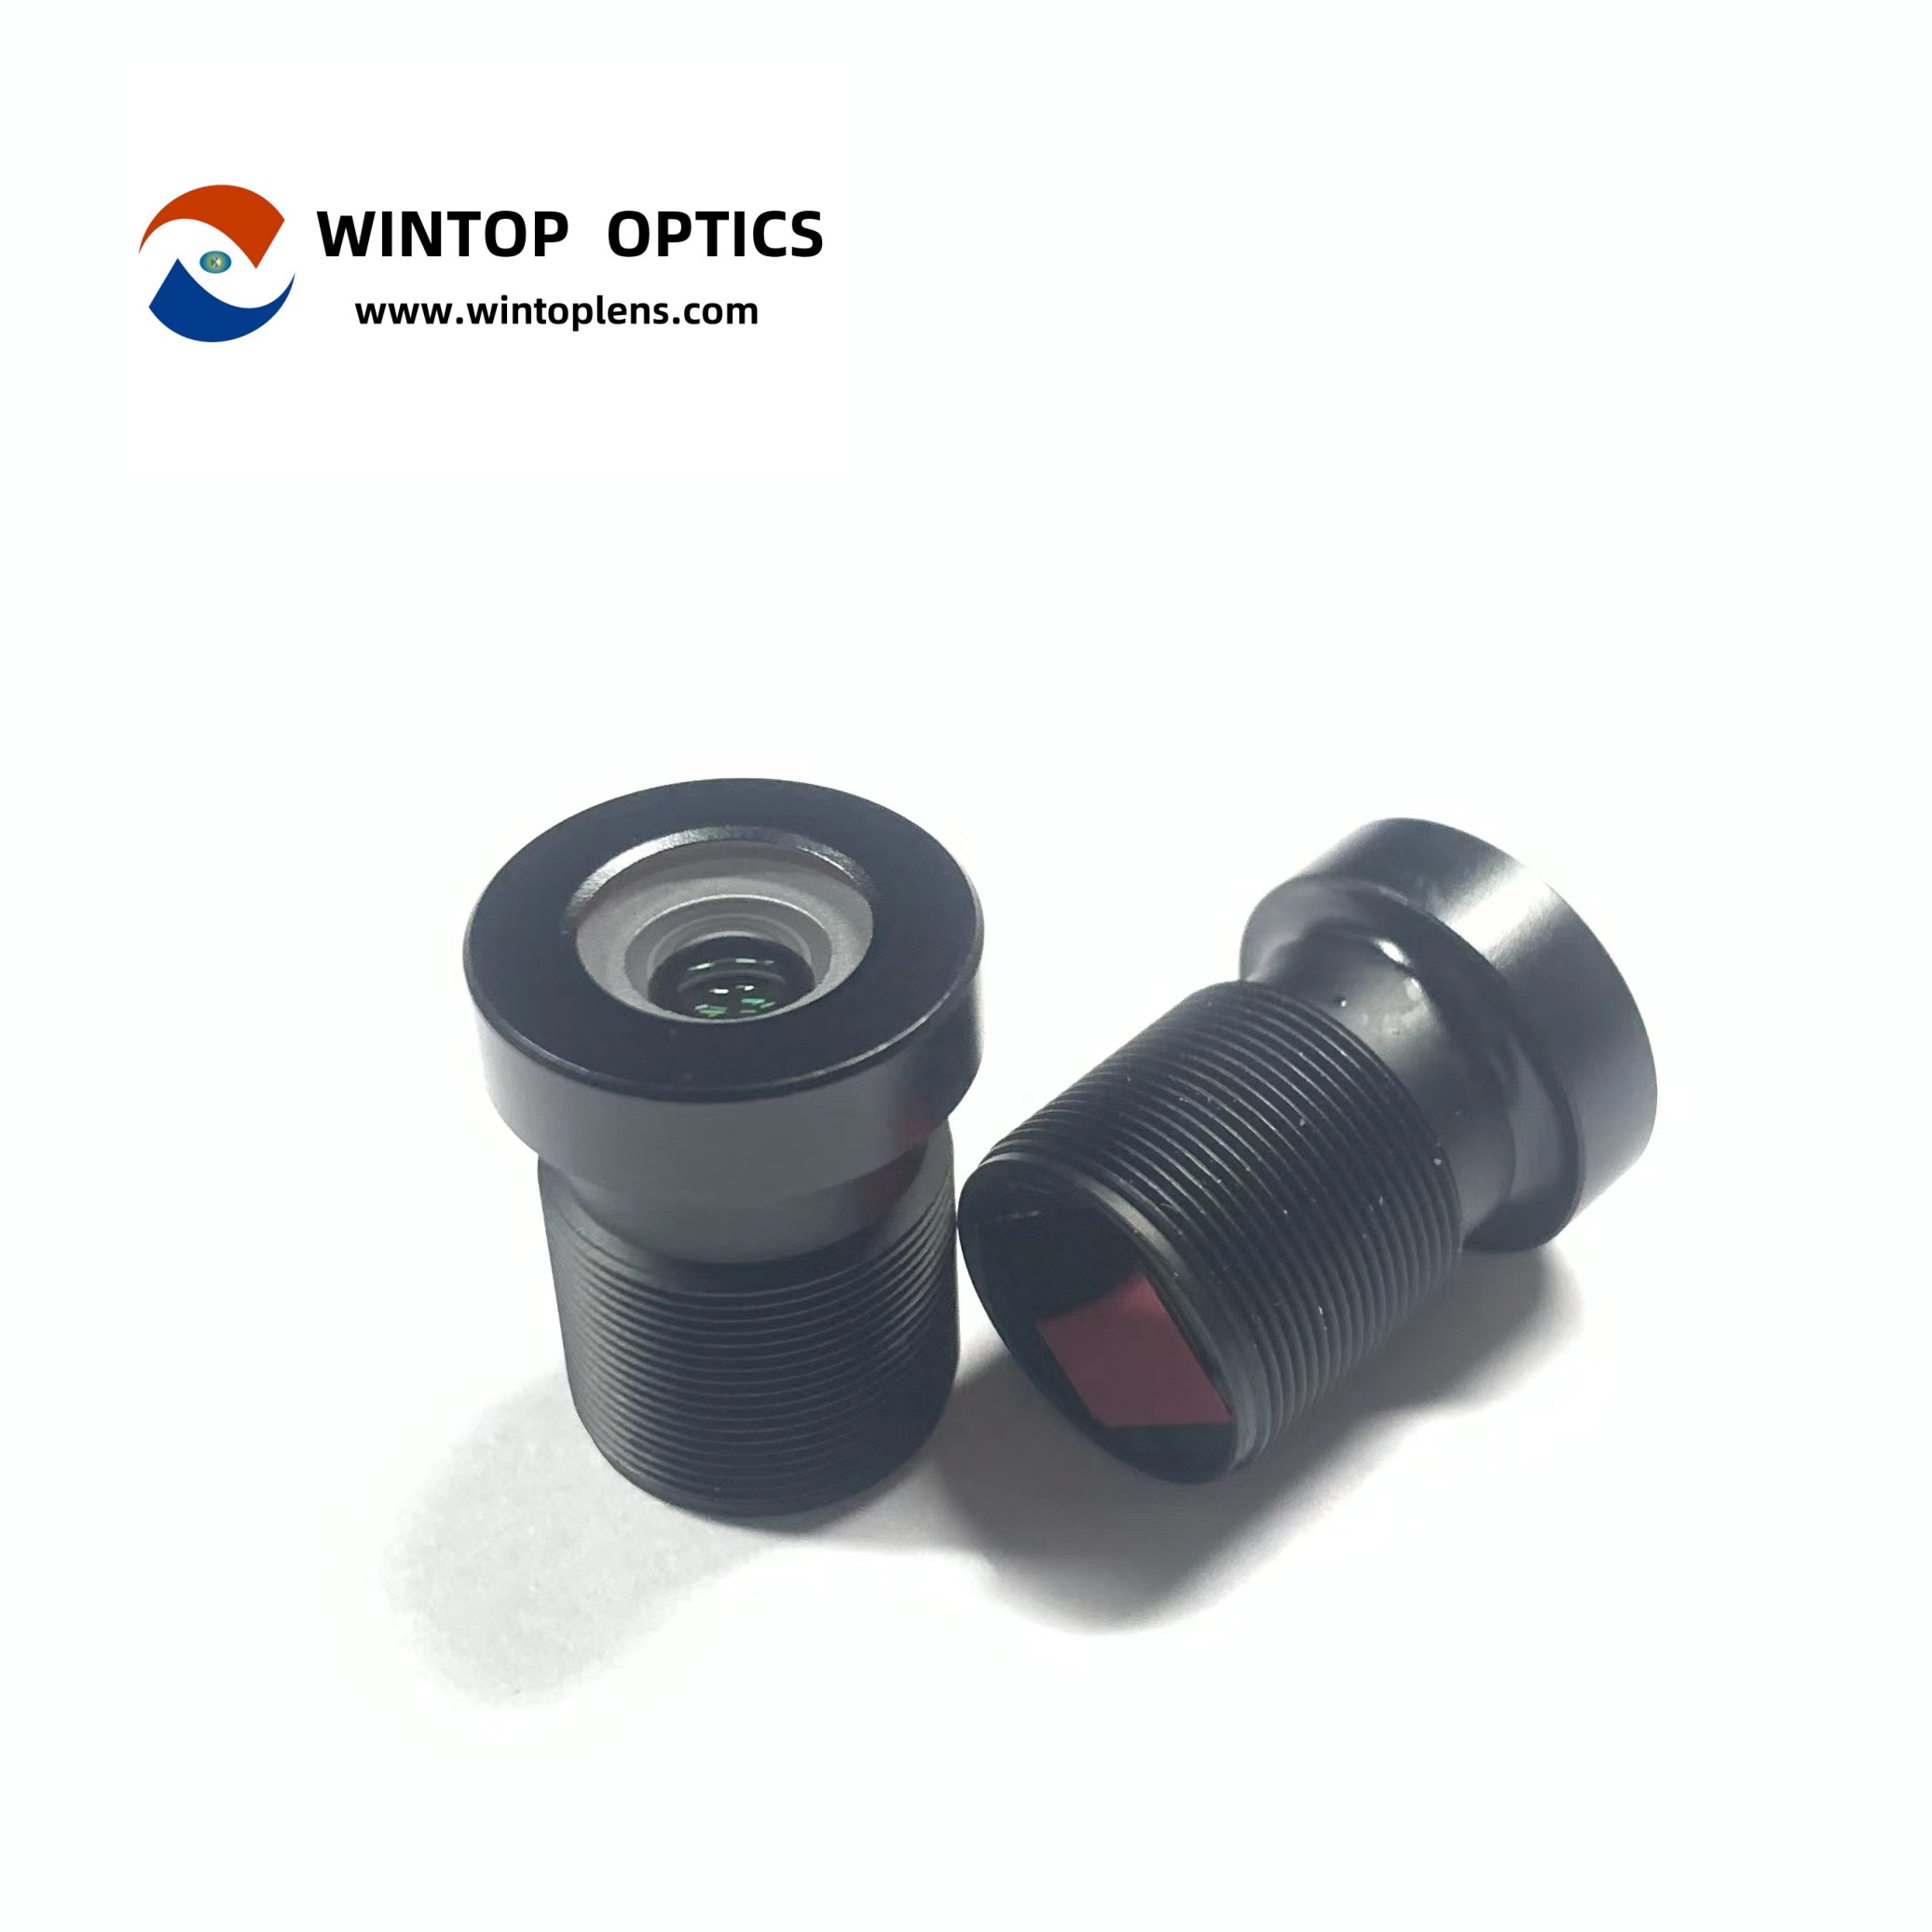 Lentes infrarrojas granangulares YT-7605-C1 de la lente de cámara ADAS del vehículo 1080P HD - WINTOP OPTICS